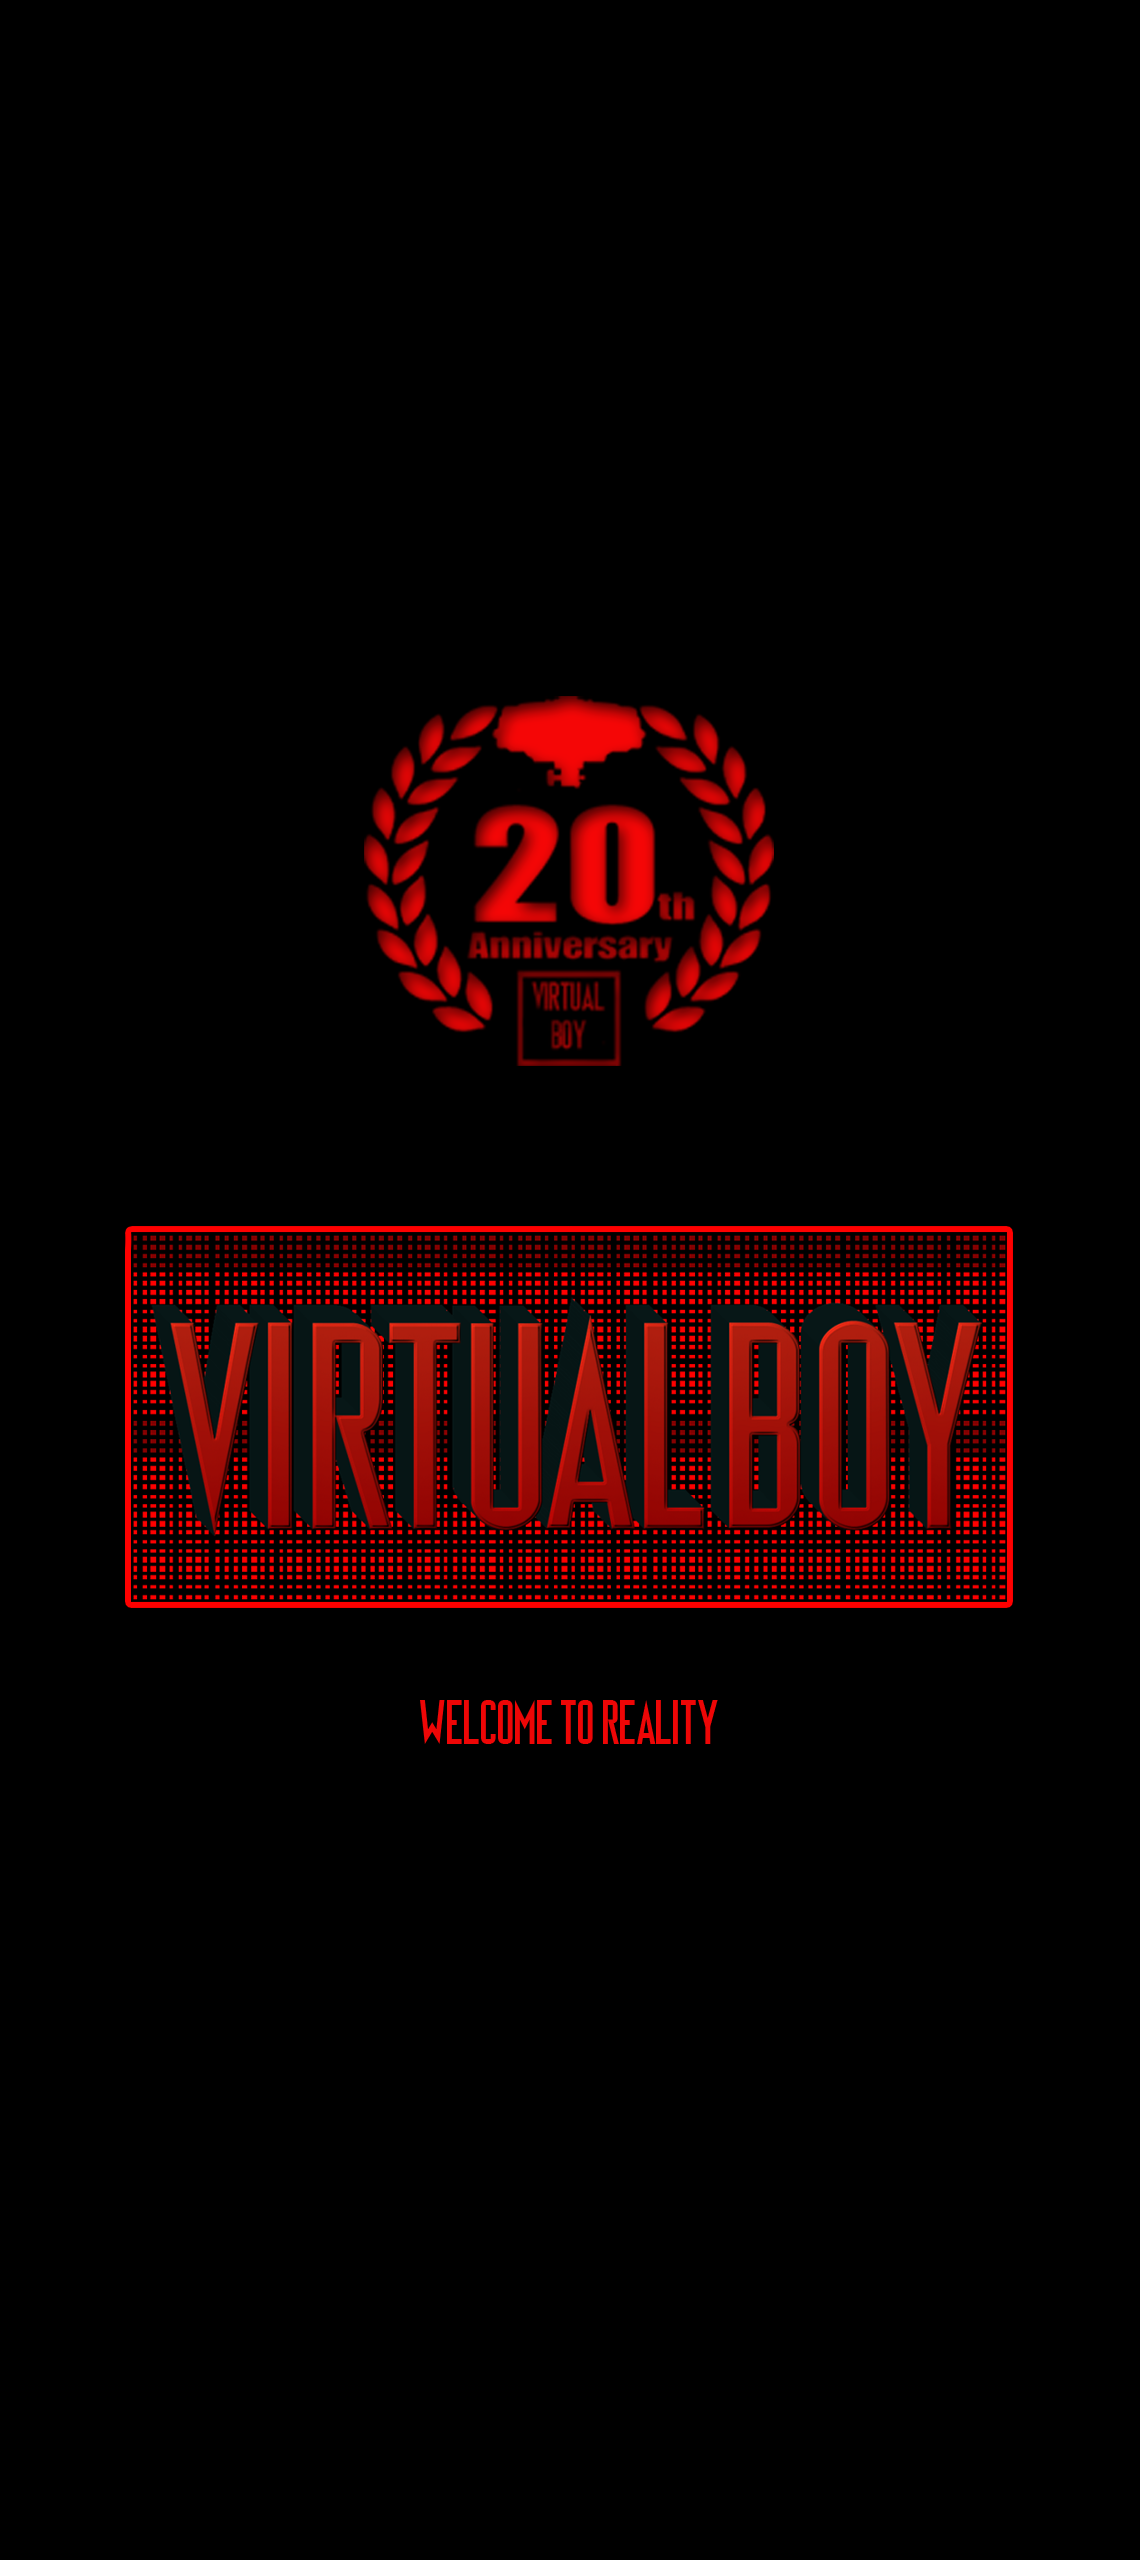 VirtualFest Wallpaper & Image Project « Planet Virtual Boy